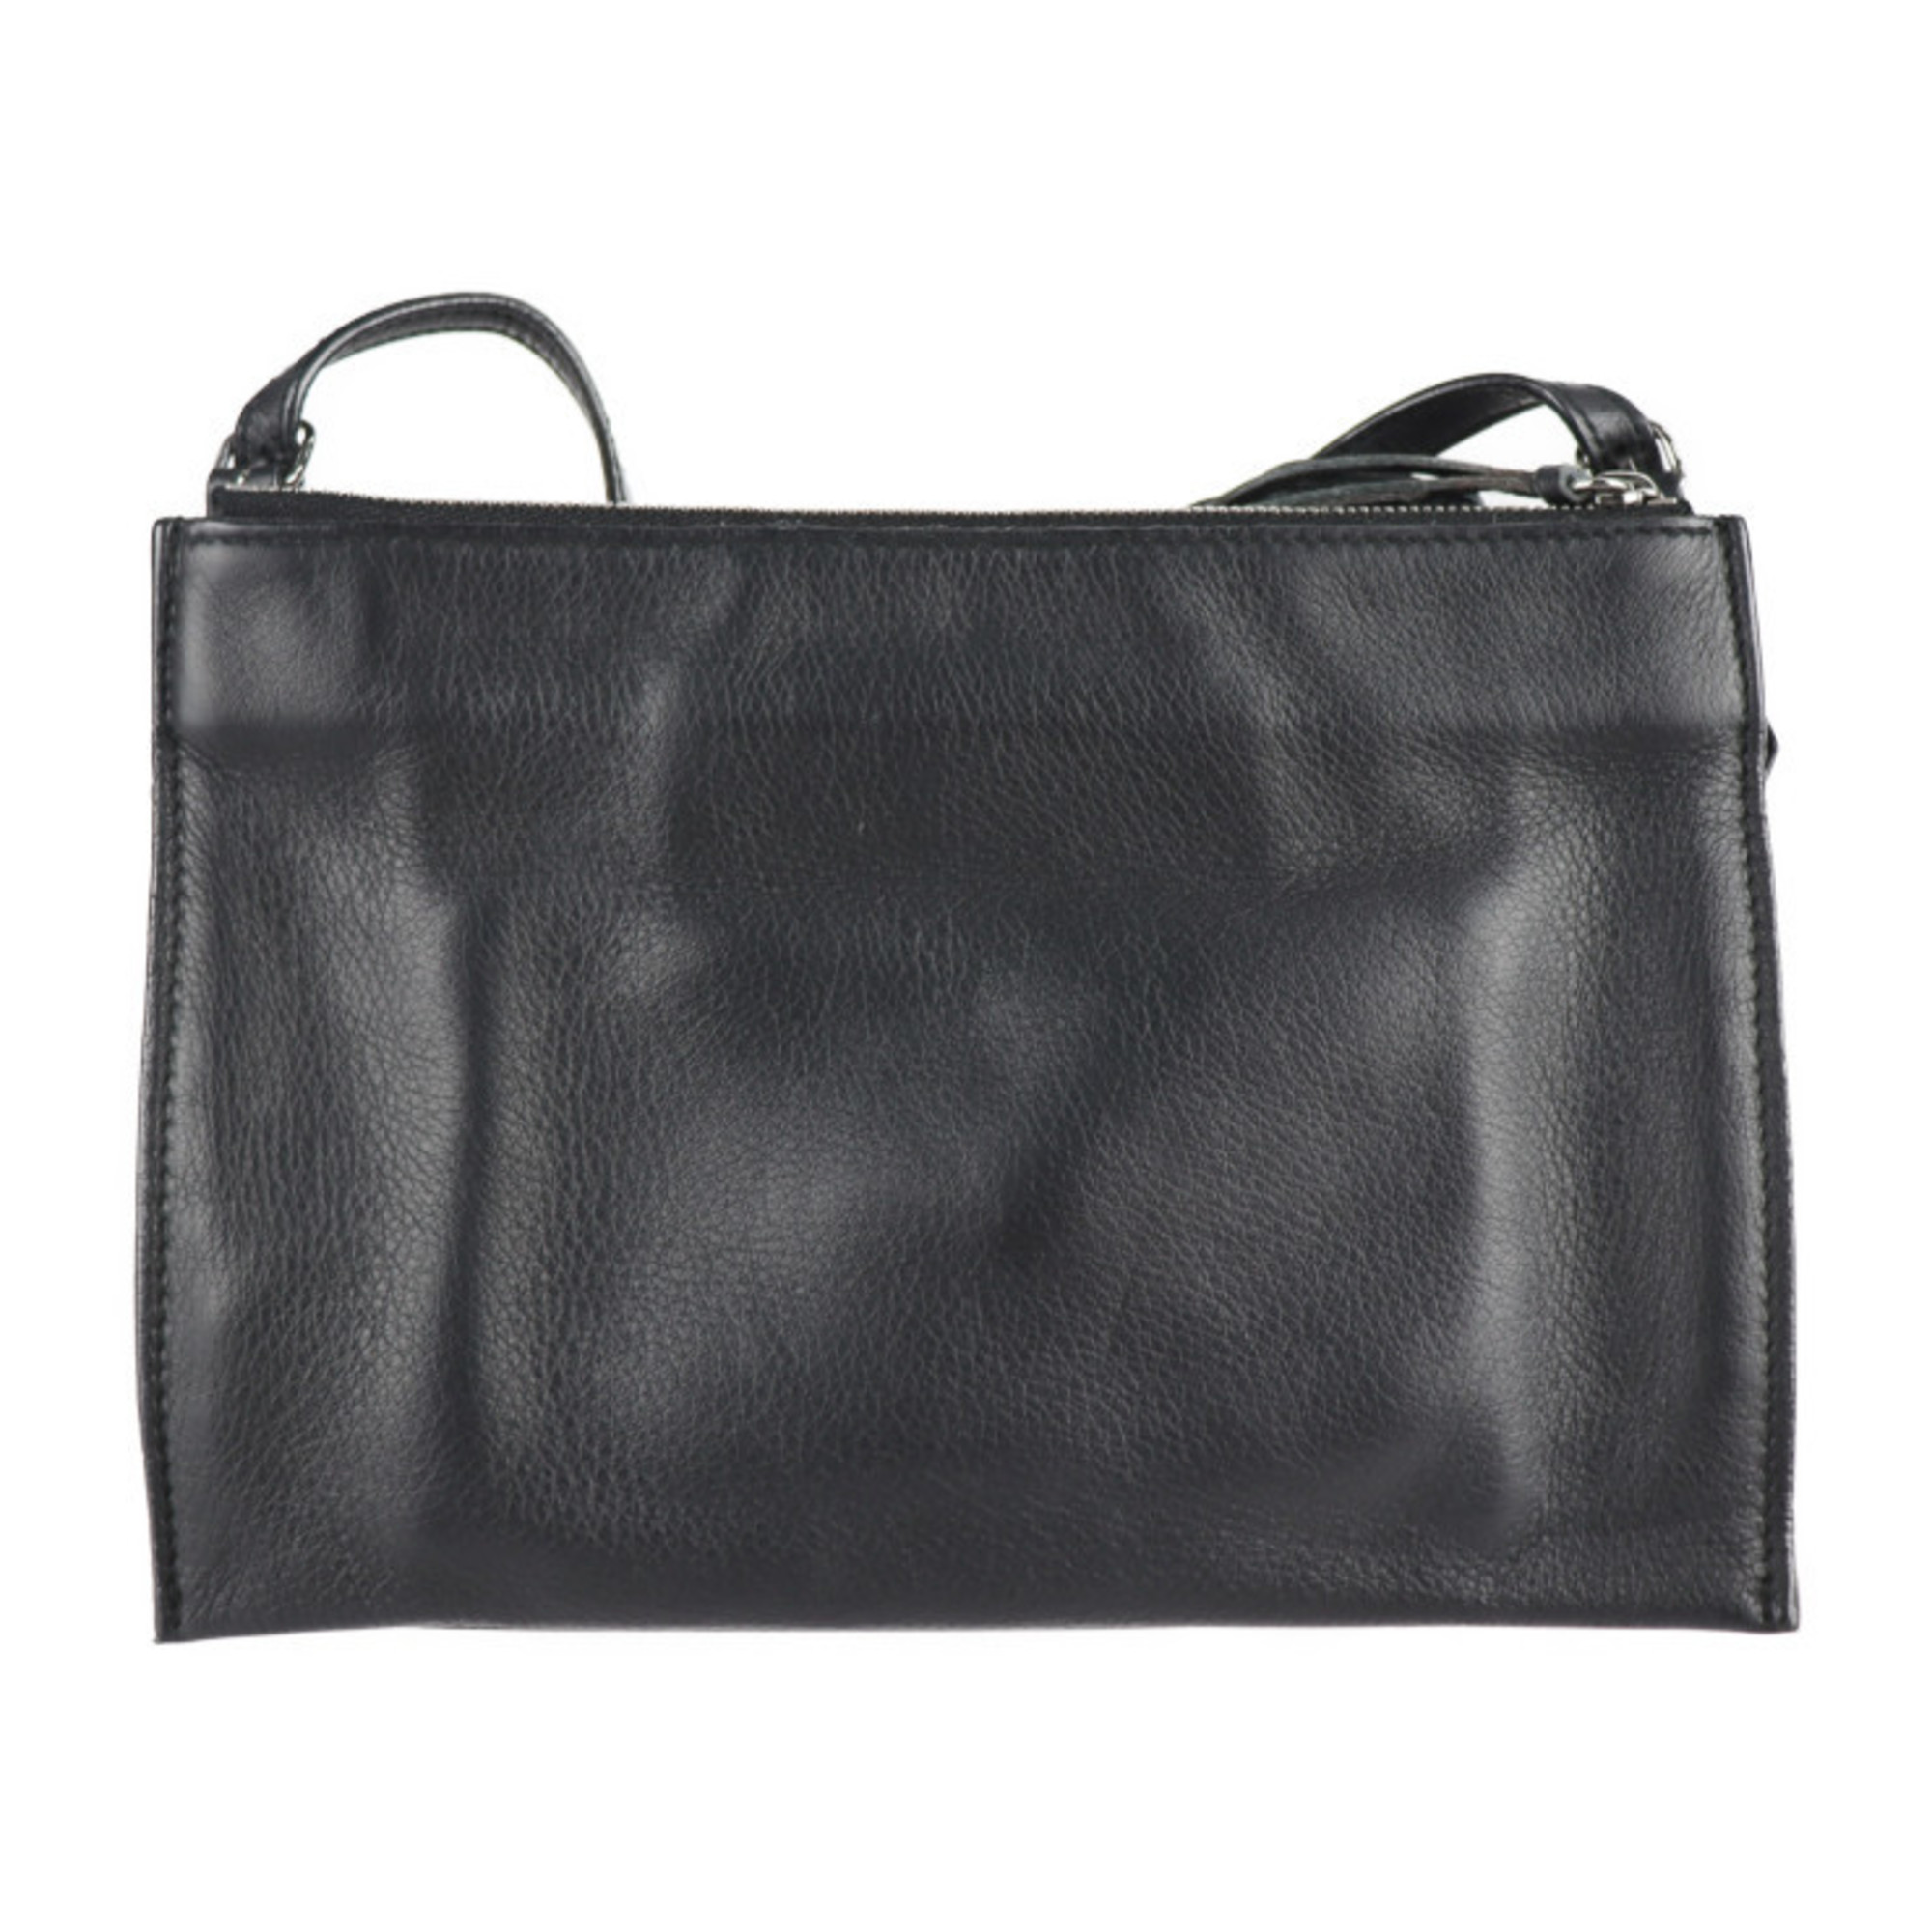 BALENCIAGA Balenciaga paper shoulder bag 357321 leather black 2WAY clutch mini handbag